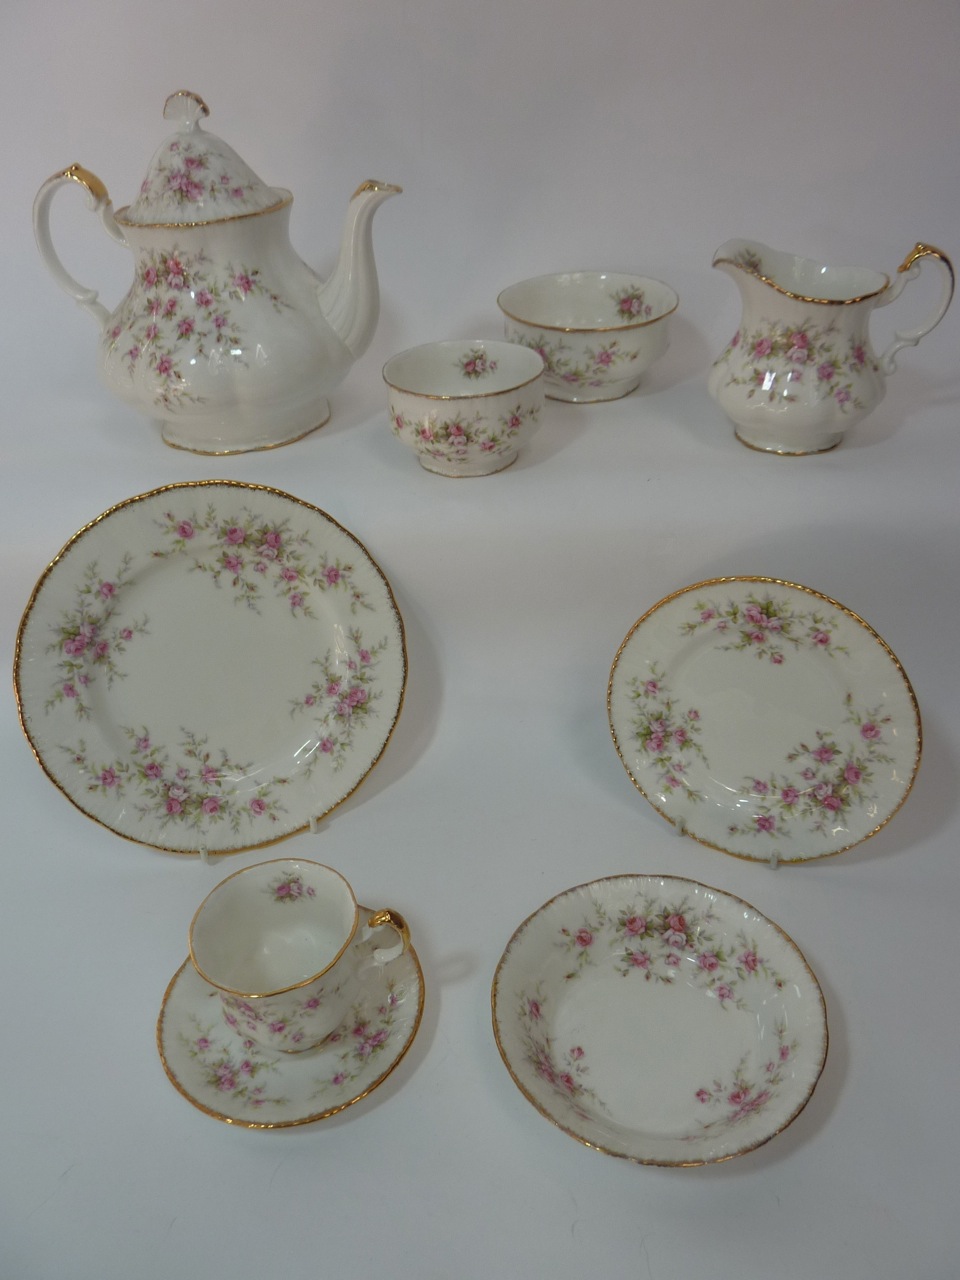 A quantity of Paragon "Victoriana Rose" tea wares including teapot, milk jug, two sugar bowls, six